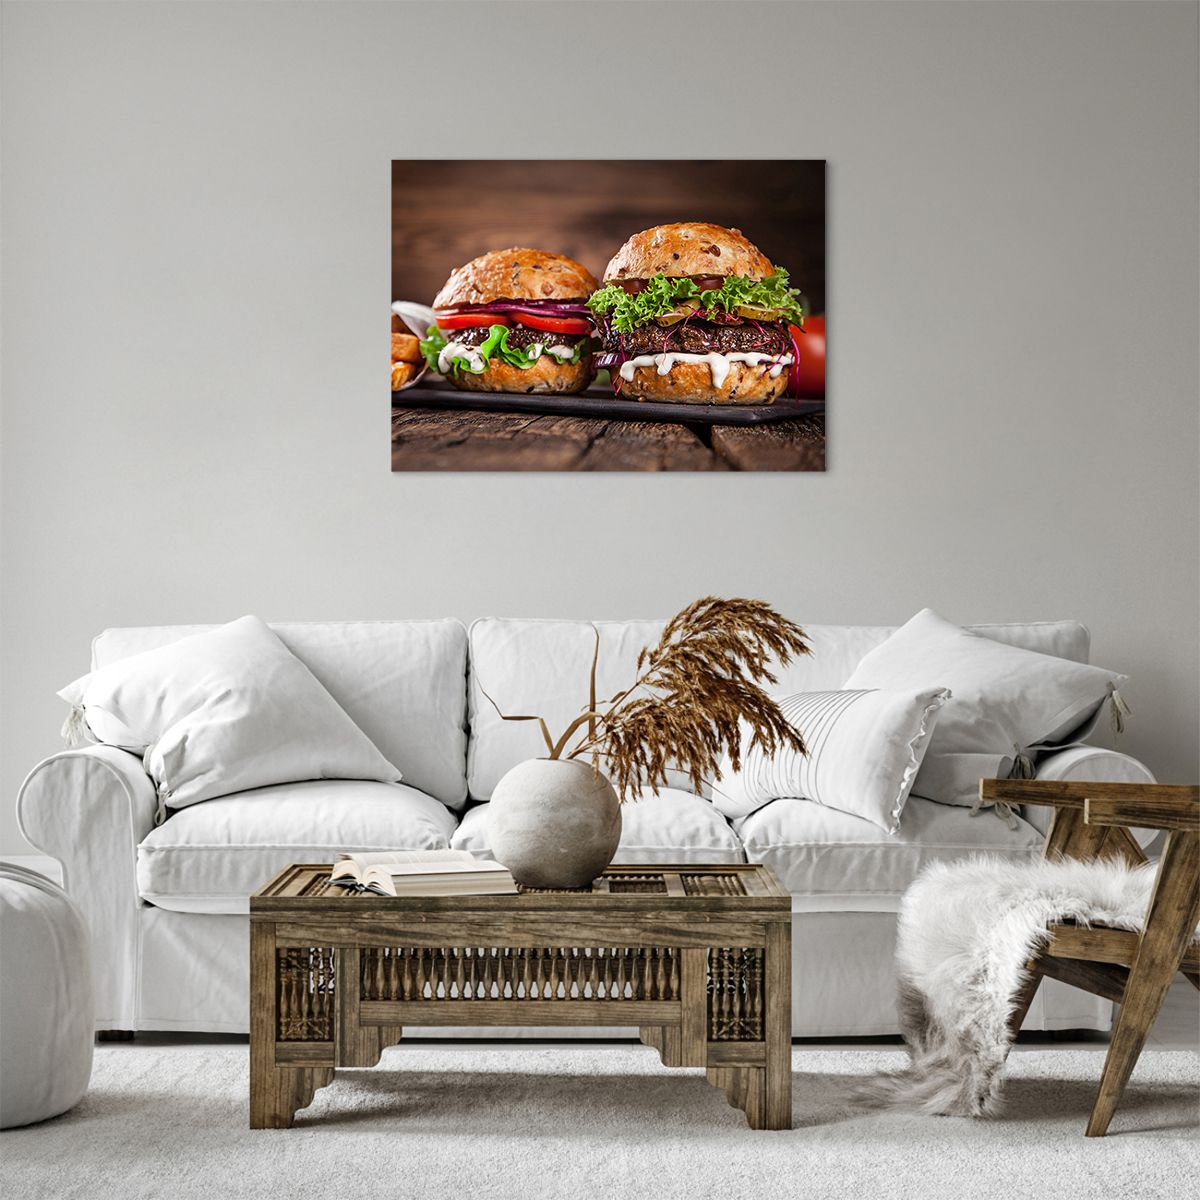 Bild auf Leinwand Gastronomie, Bild auf Leinwand Hamburger, Bild auf Leinwand Kulinarisch, Bild auf Leinwand Fastfood, Bild auf Leinwand Küche